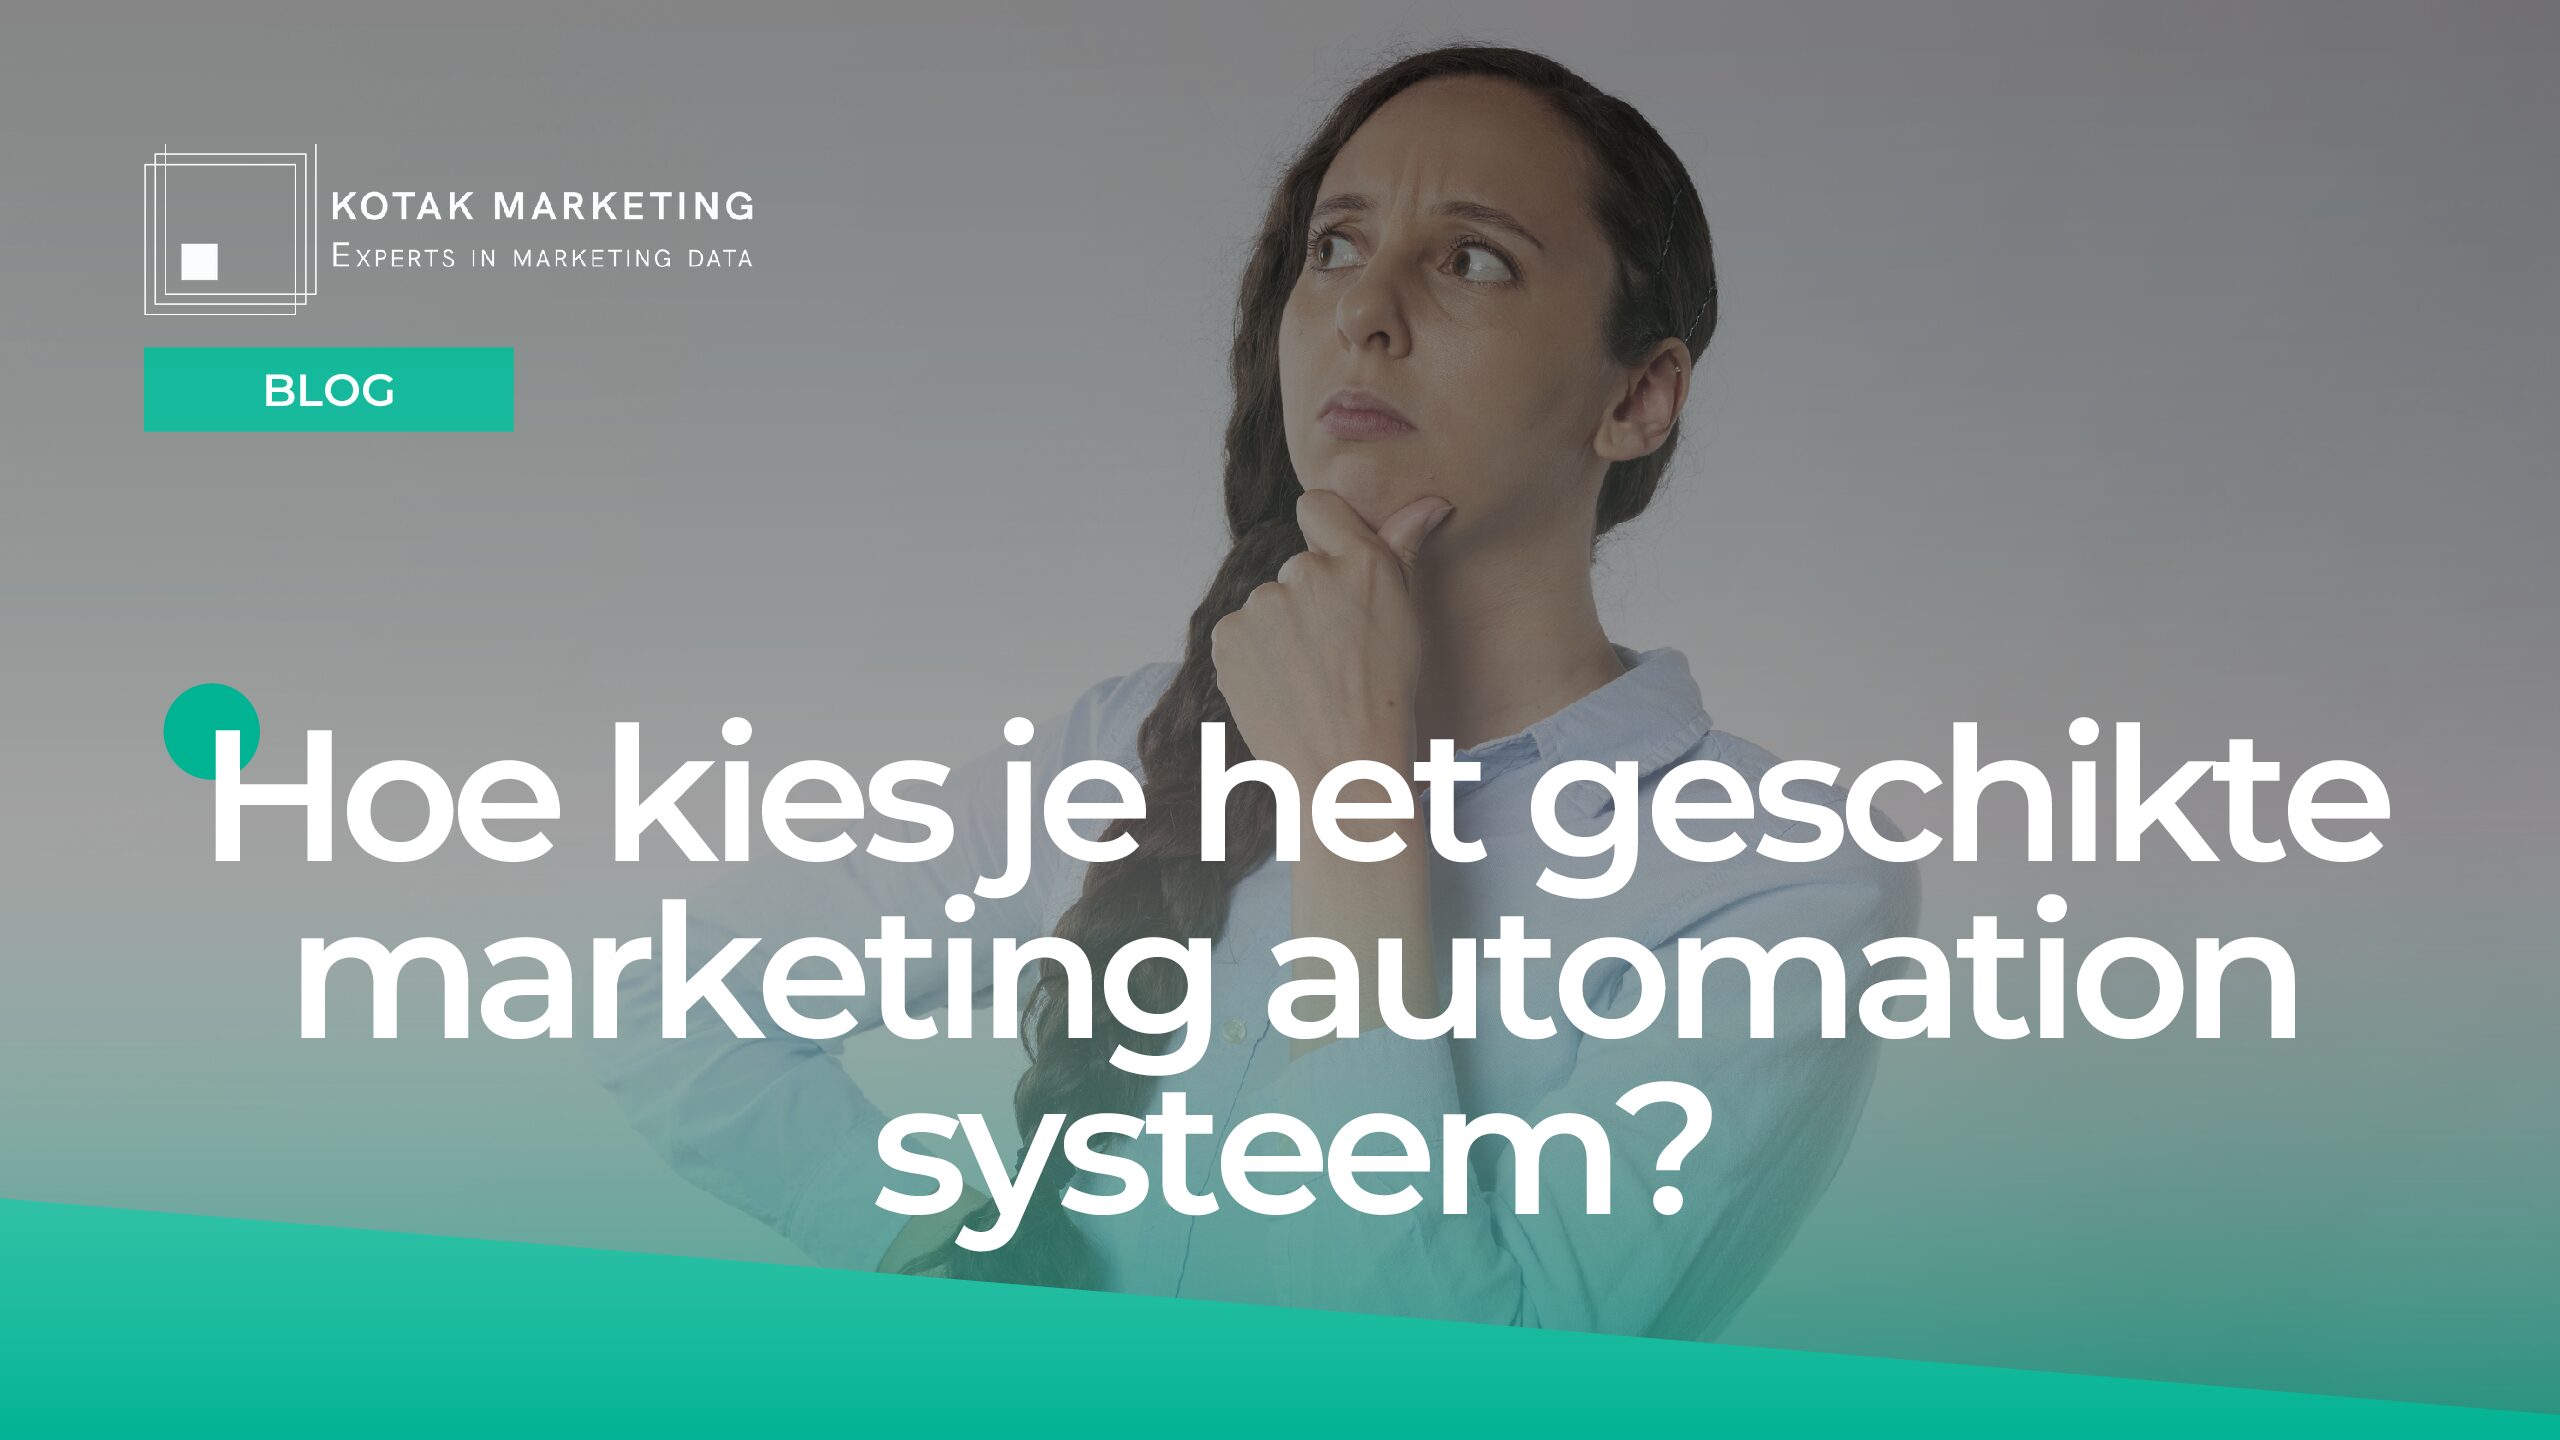 Hoe kies je het geschikte marketing automation systeem?